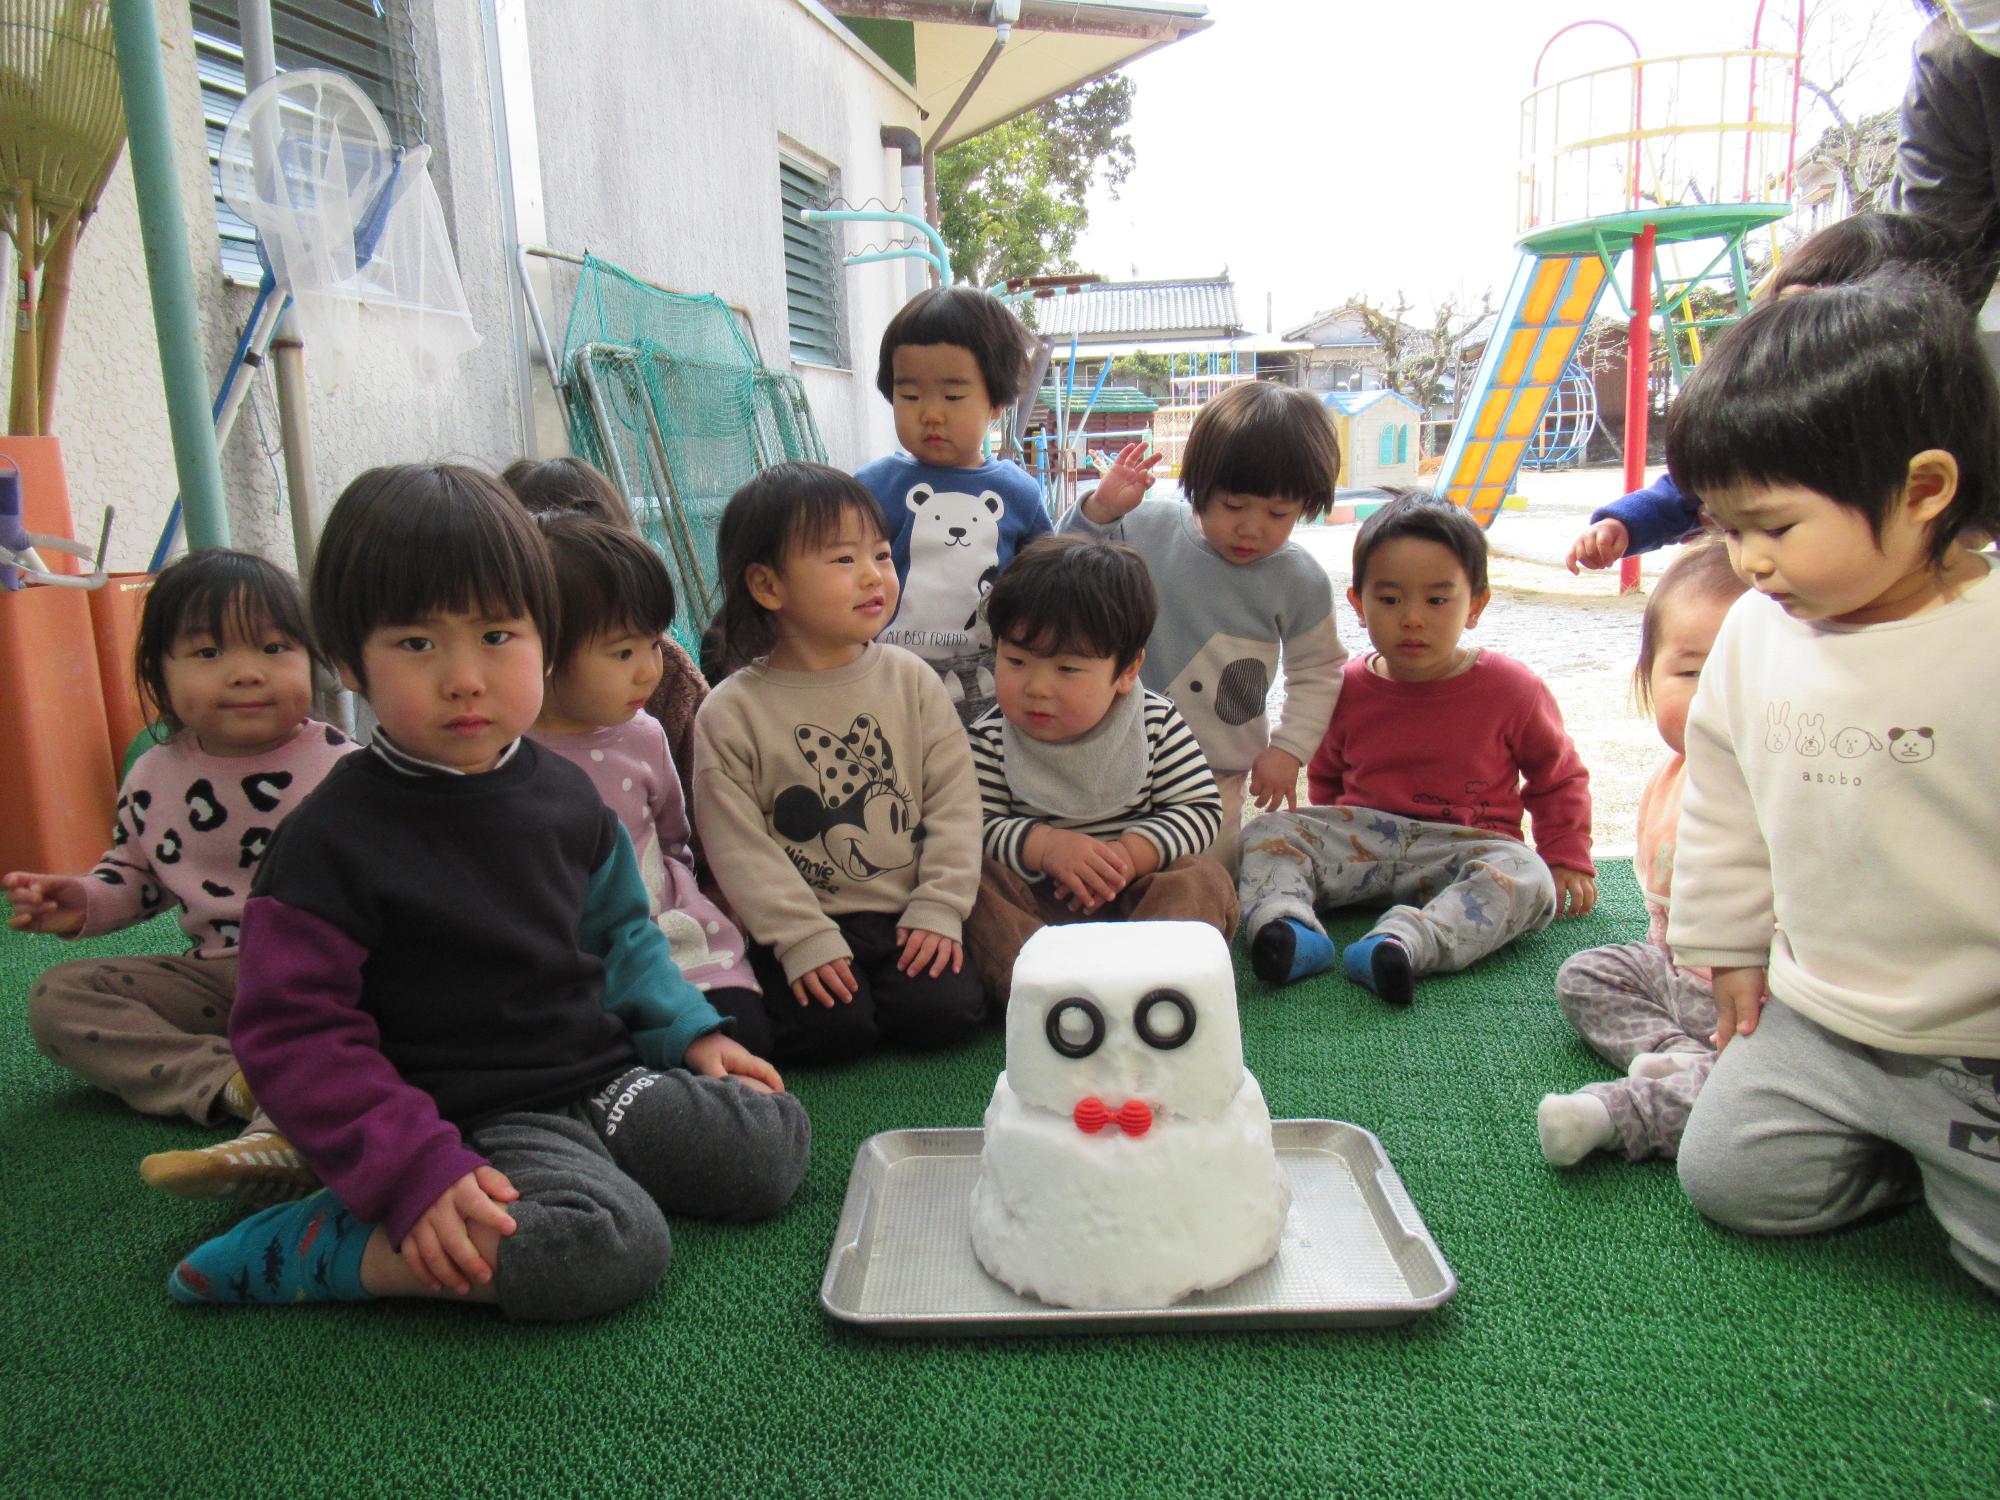 雪ロボットと子どもたち